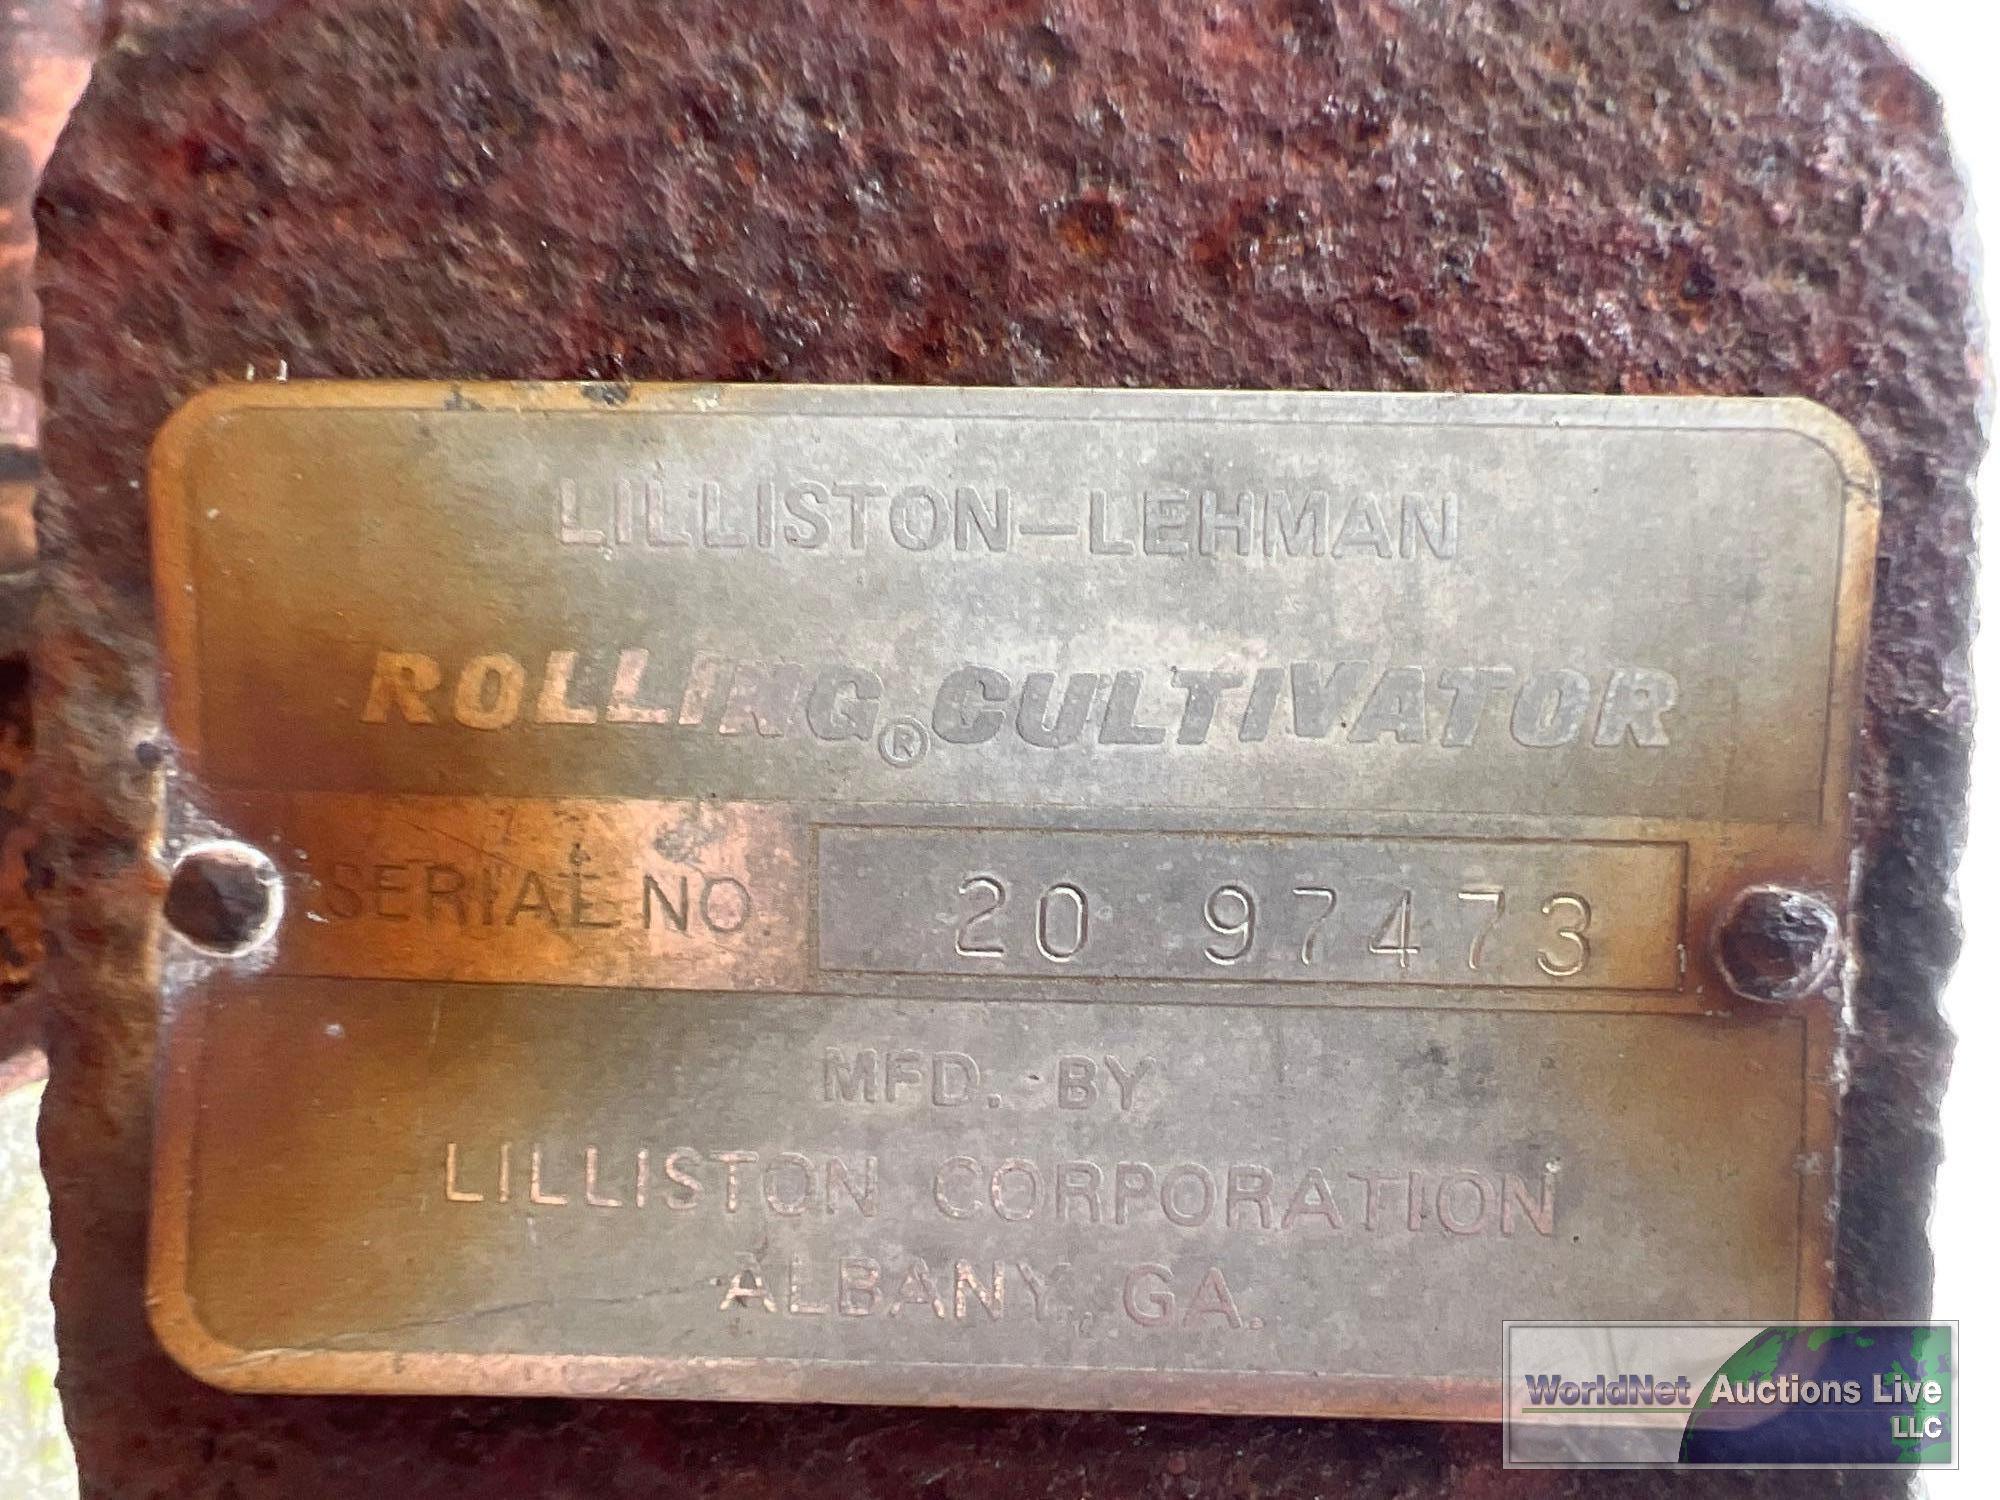 ALLISTON-LEHMAN 20' ROLLING CULTIVATOR SN-2097473